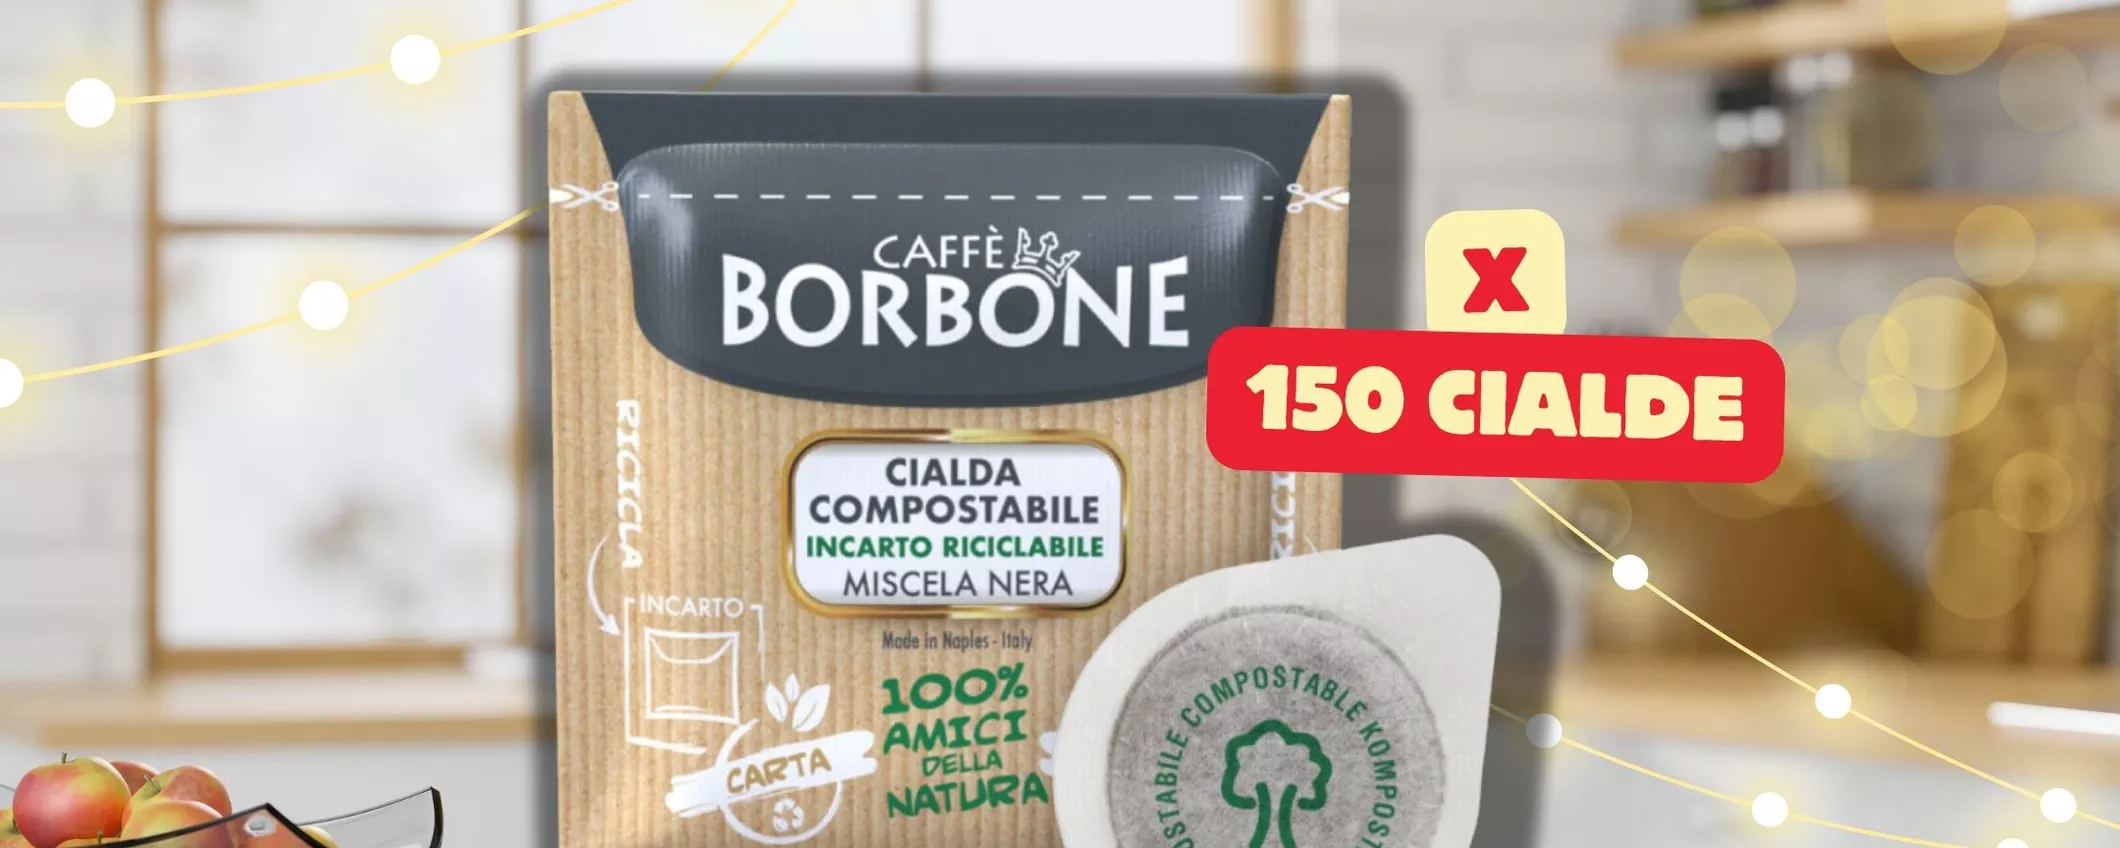 Affare Imperdibile: 150 Cialde Caffè Borbone Miscela Nera a Soli 22€ su eBay!